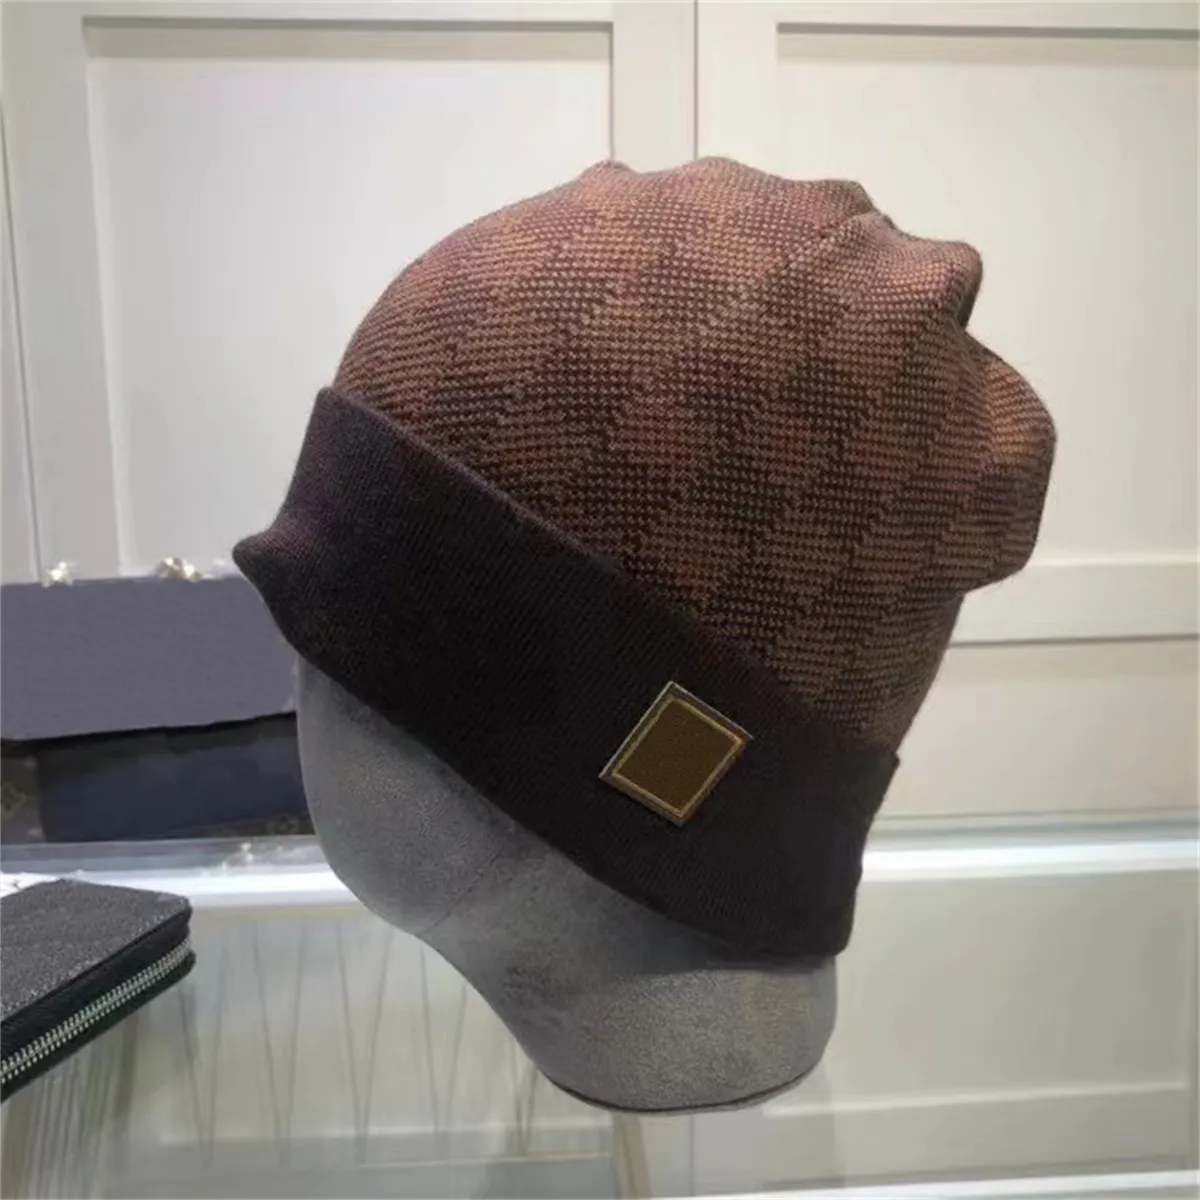 Luxo novo chapéu de alta qualidade para gorros homens mulheres clássico bordado boné inverno design bonés xale designer chapéus cachecóis lã beanie wrap caps alta qualidade c54